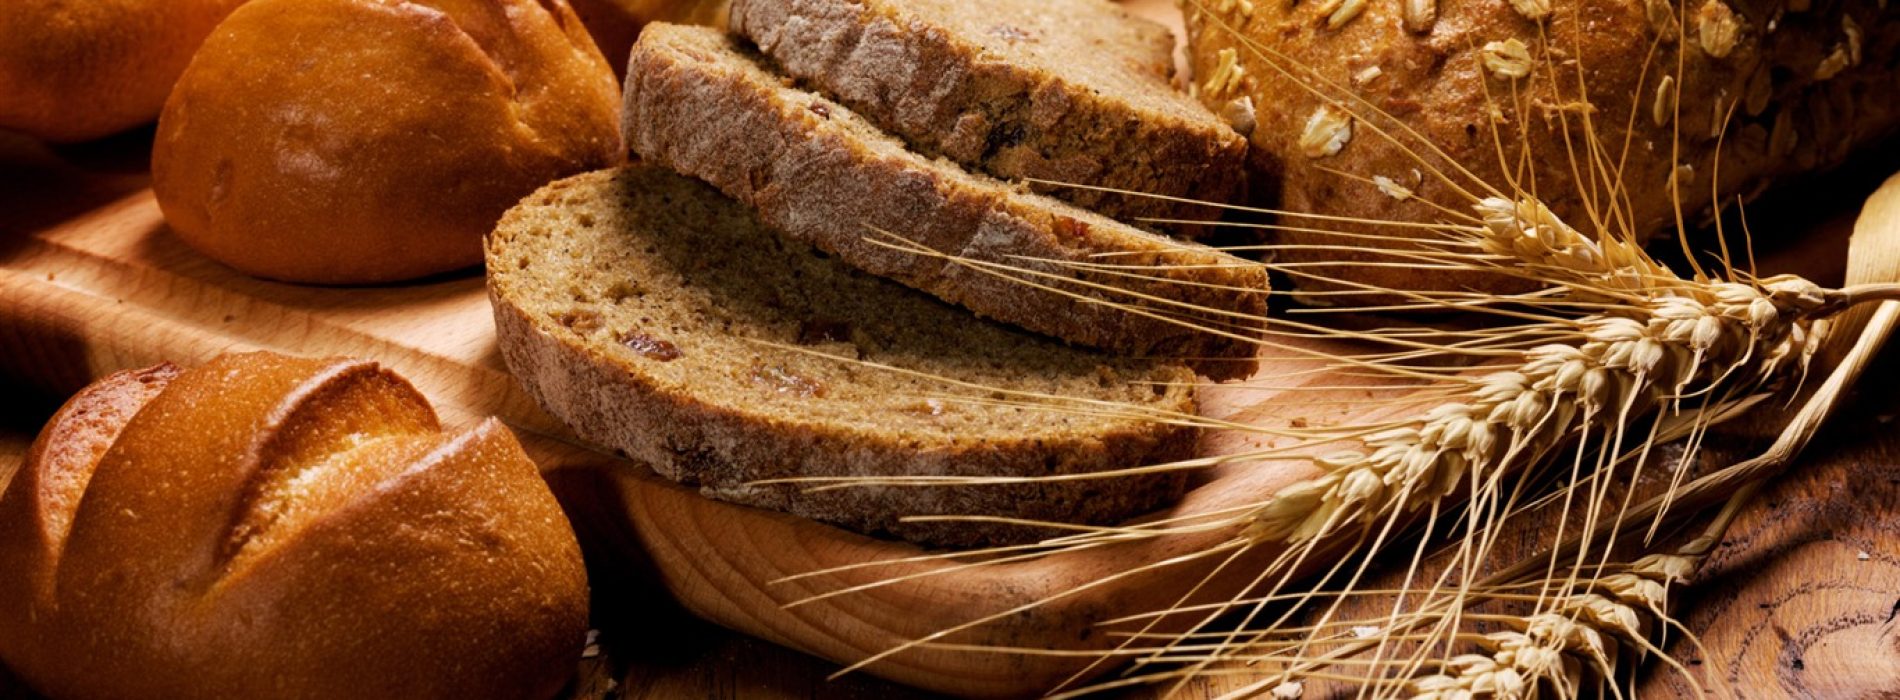 “Ons brood bevat mensenhaar als verbetermiddel”